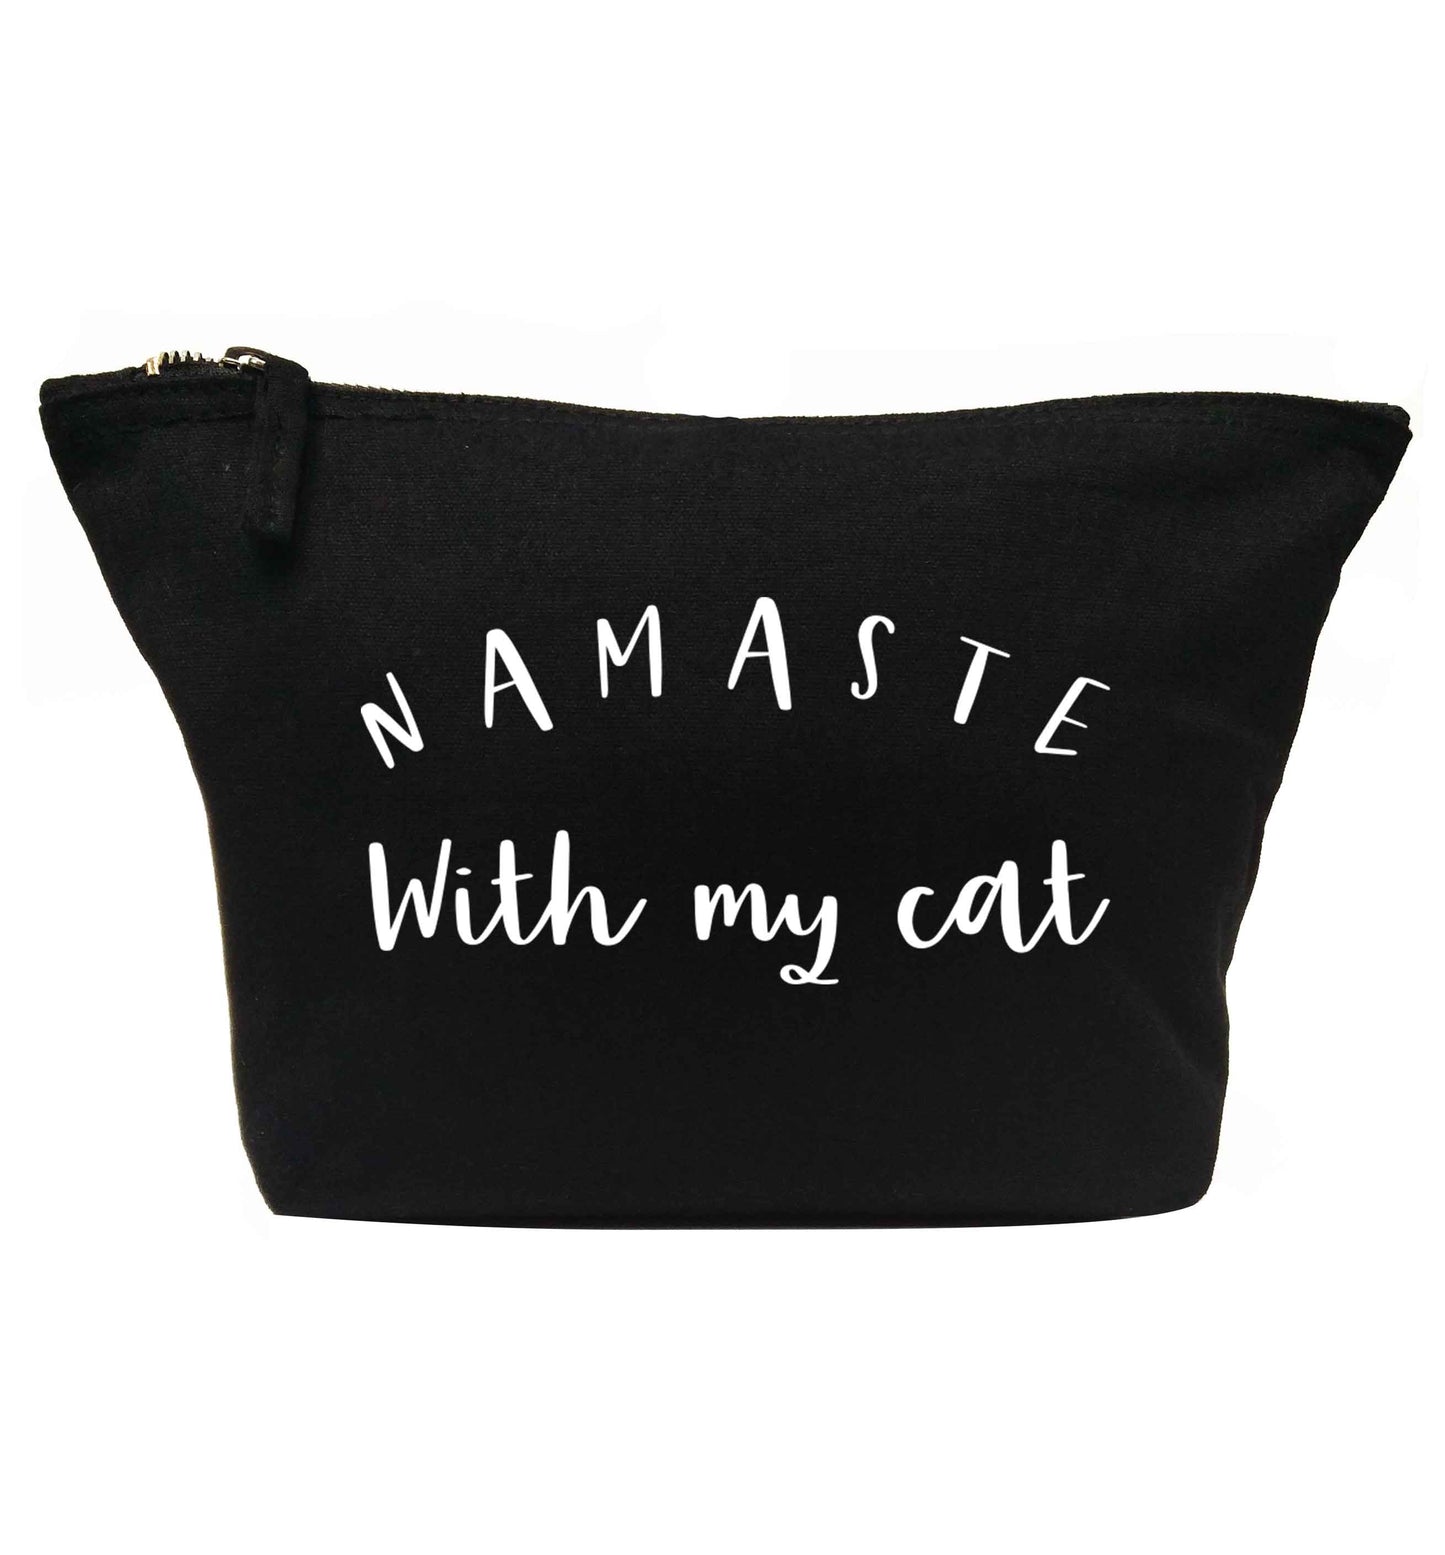 Namaste with my cat | makeup / wash bag